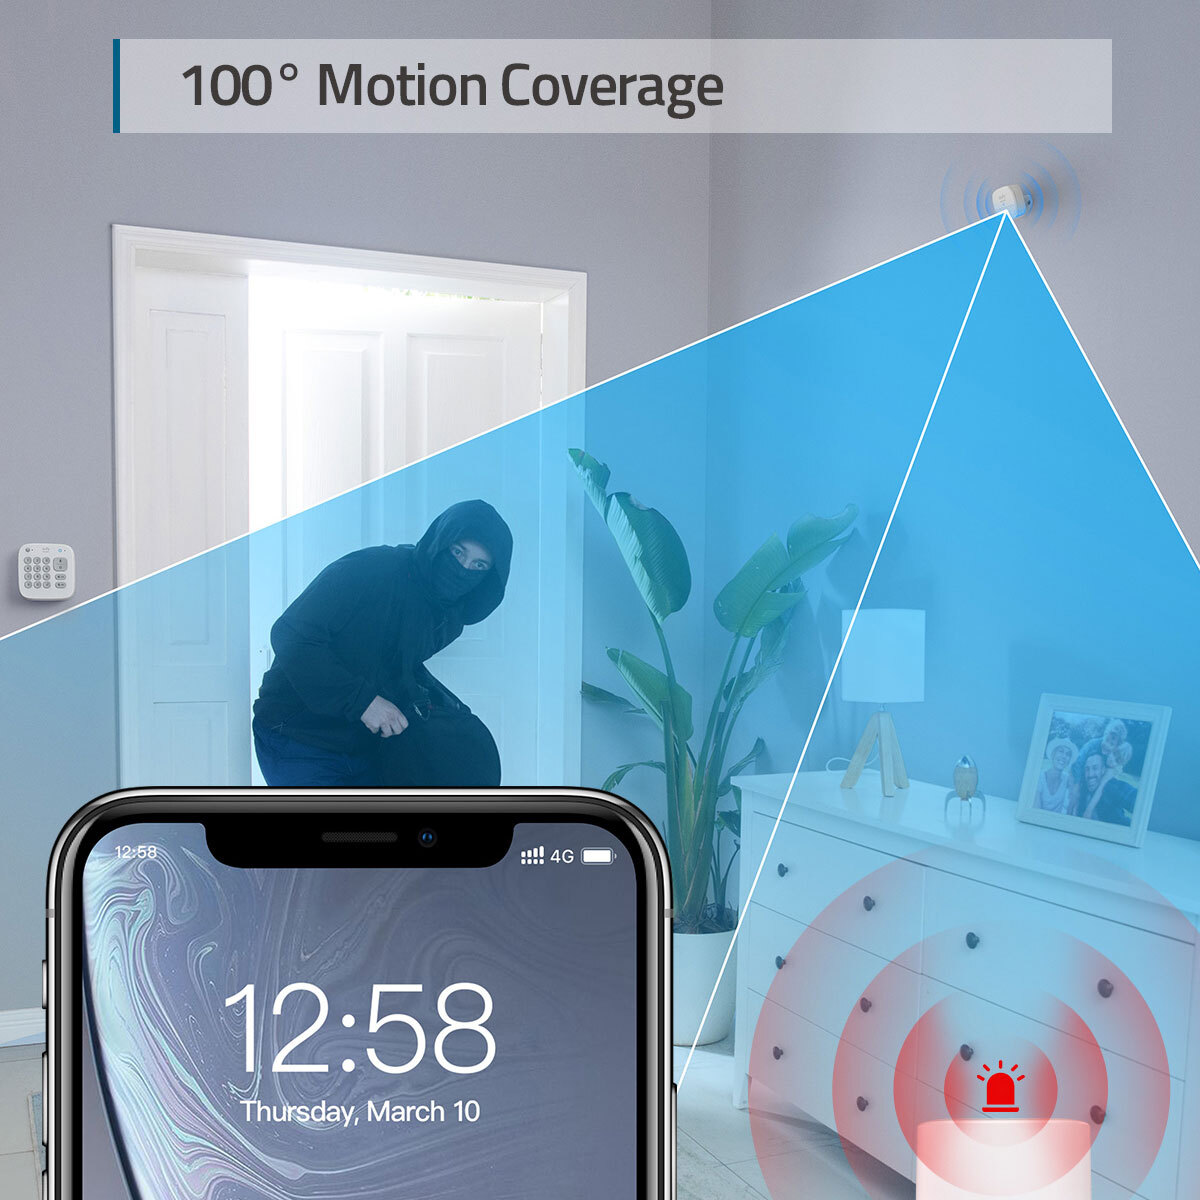 Lifestyle image of motion sensor coverage